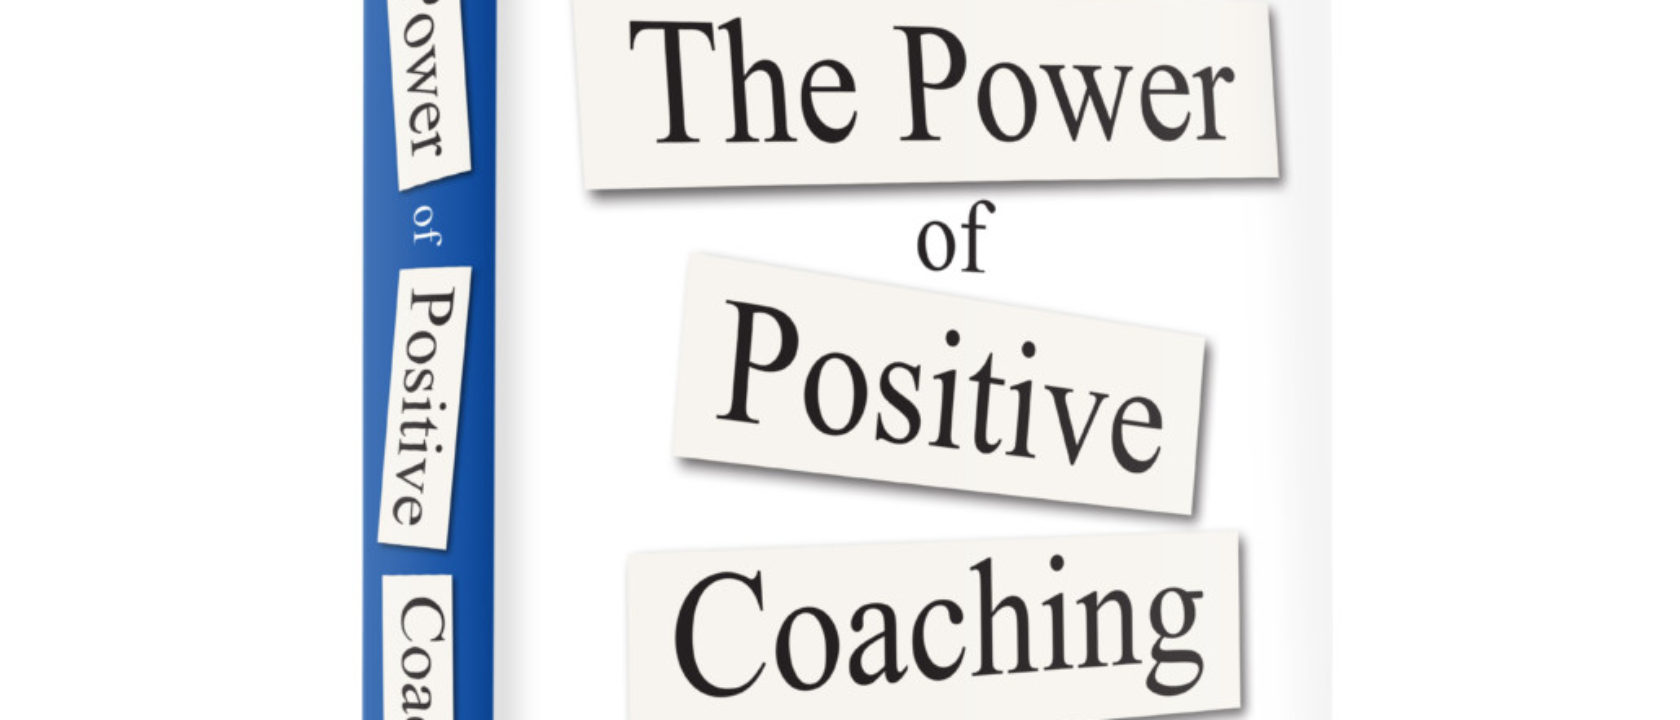 Positive Coaching